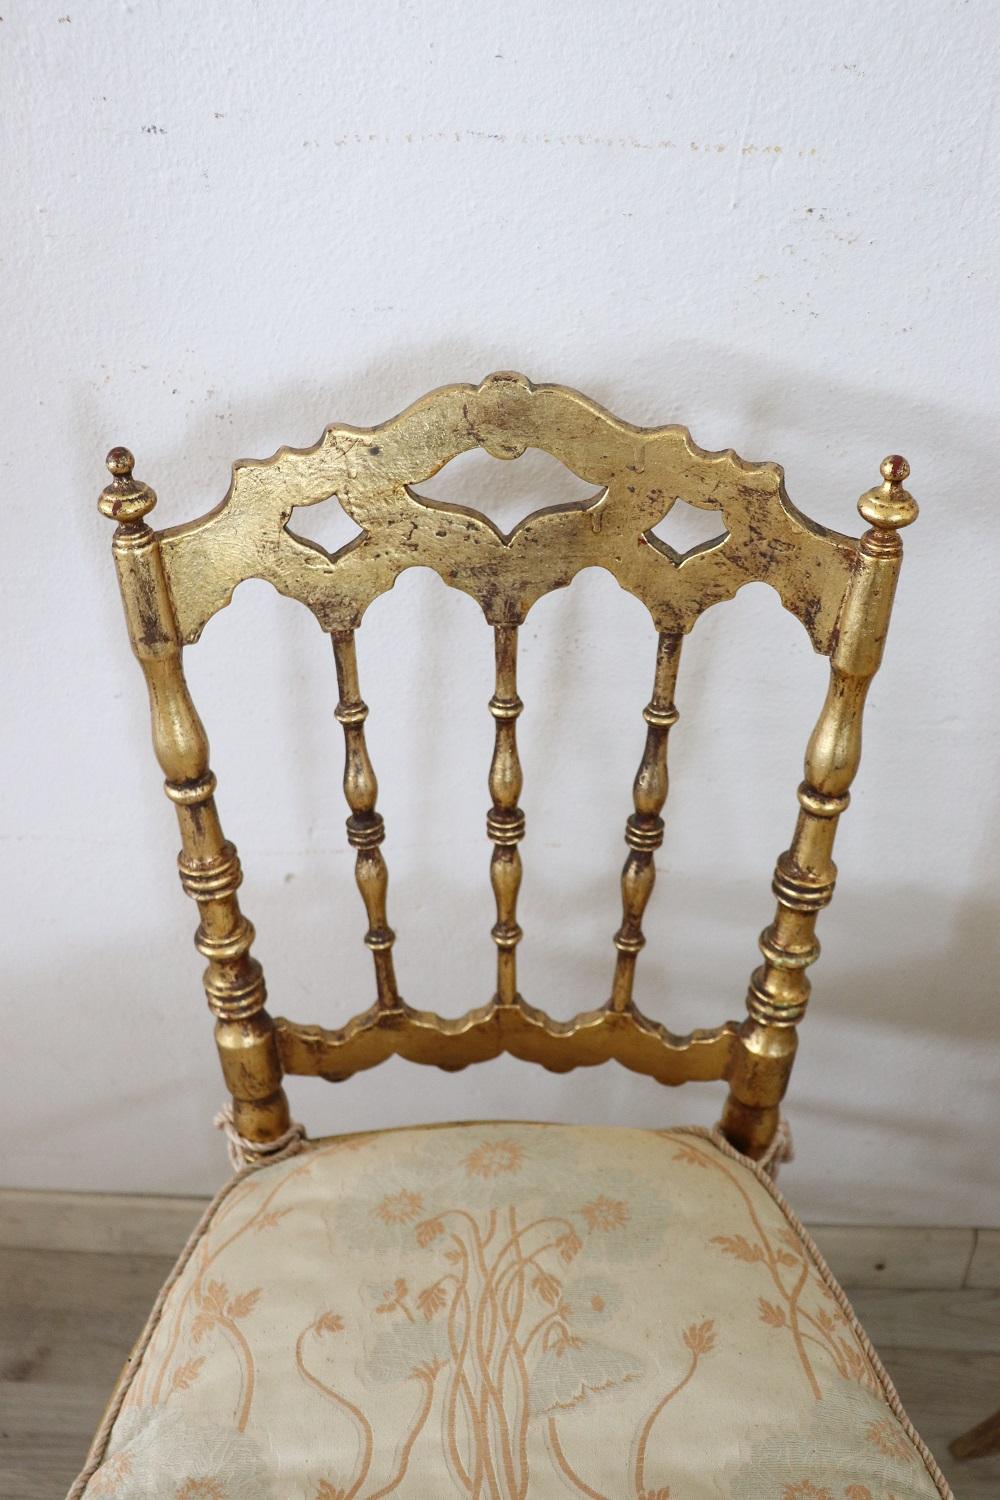 Très belle série de deux chaises de production de Chiavari Italie ébénistes laboratoires. Toutes les chaises que vous voyez en vente sont des antiquités 1880s en bois tourné. Le bois est entièrement doré à la feuille d'or. Le siège en paille de